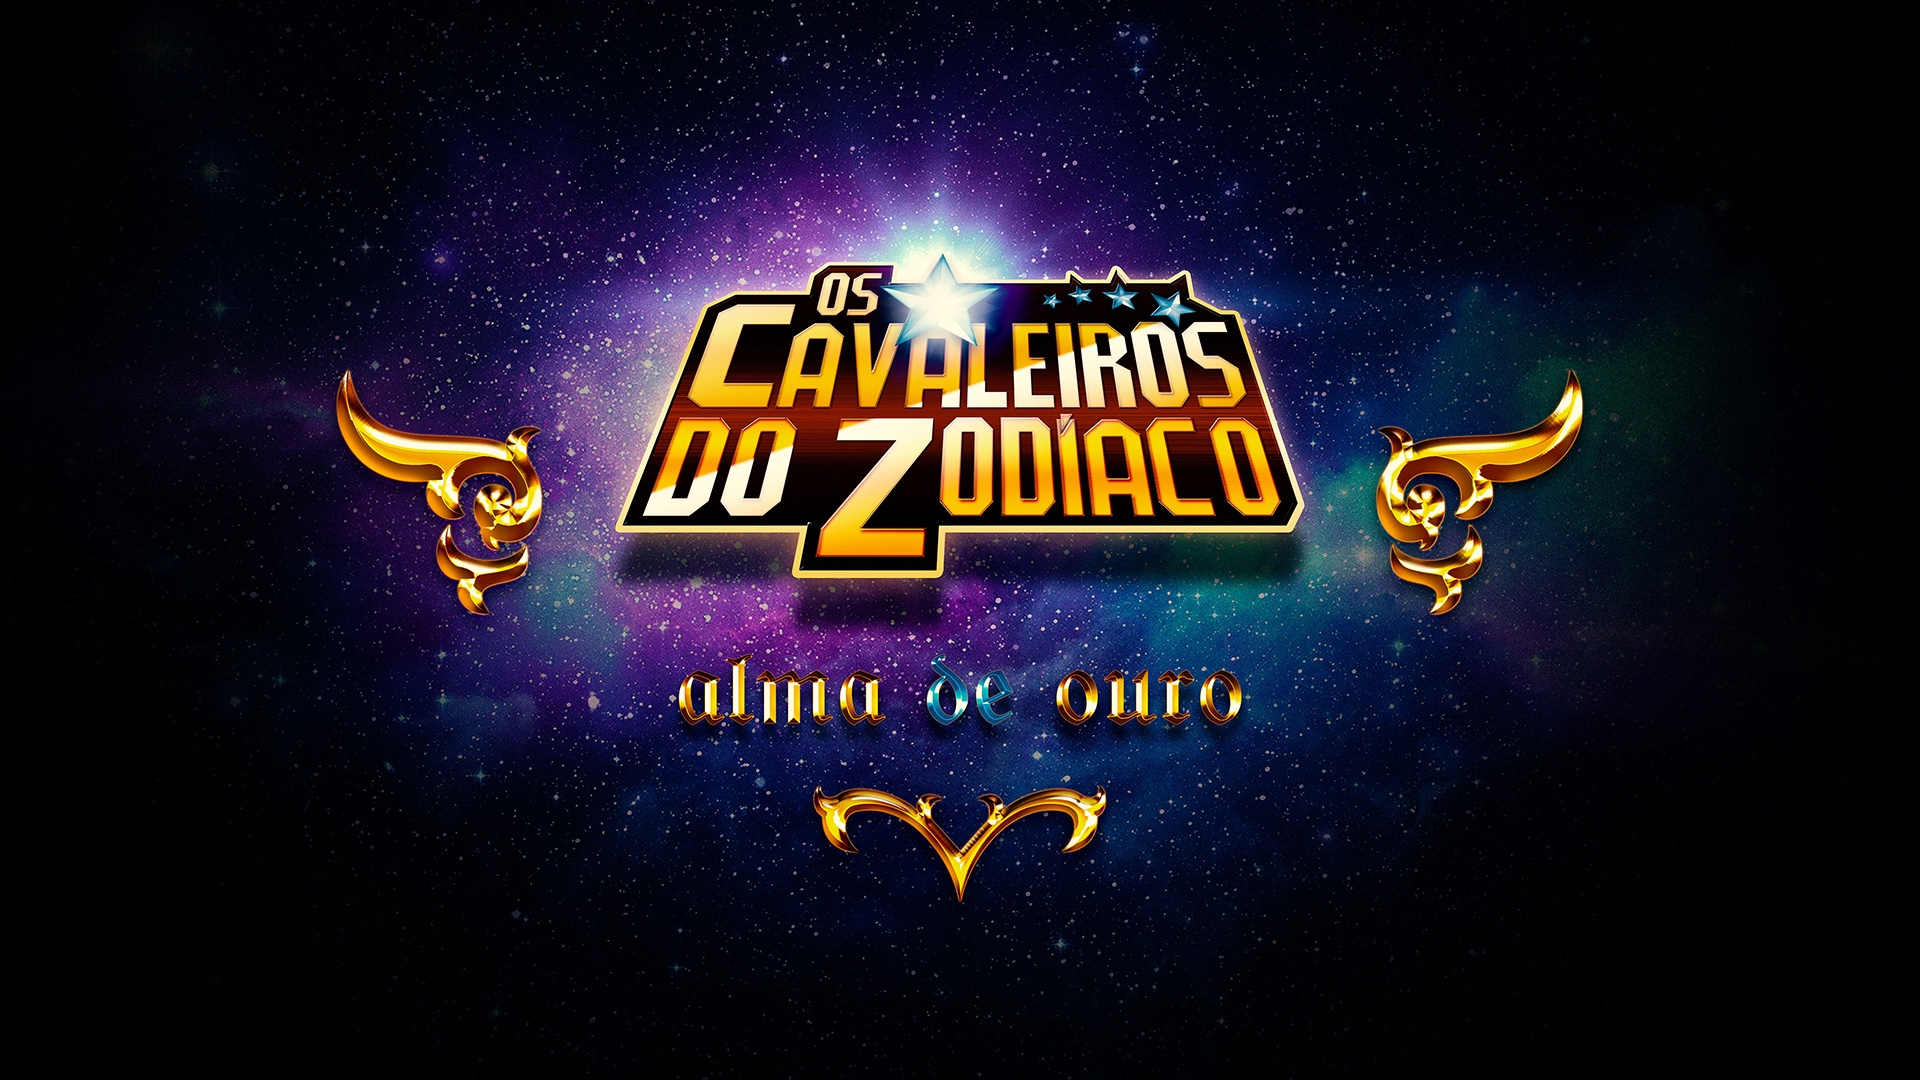 Cavaleiros do Zodiaco - Saint Seiya: cavaleiro dos zodíaco alma de ouro dublado  Download